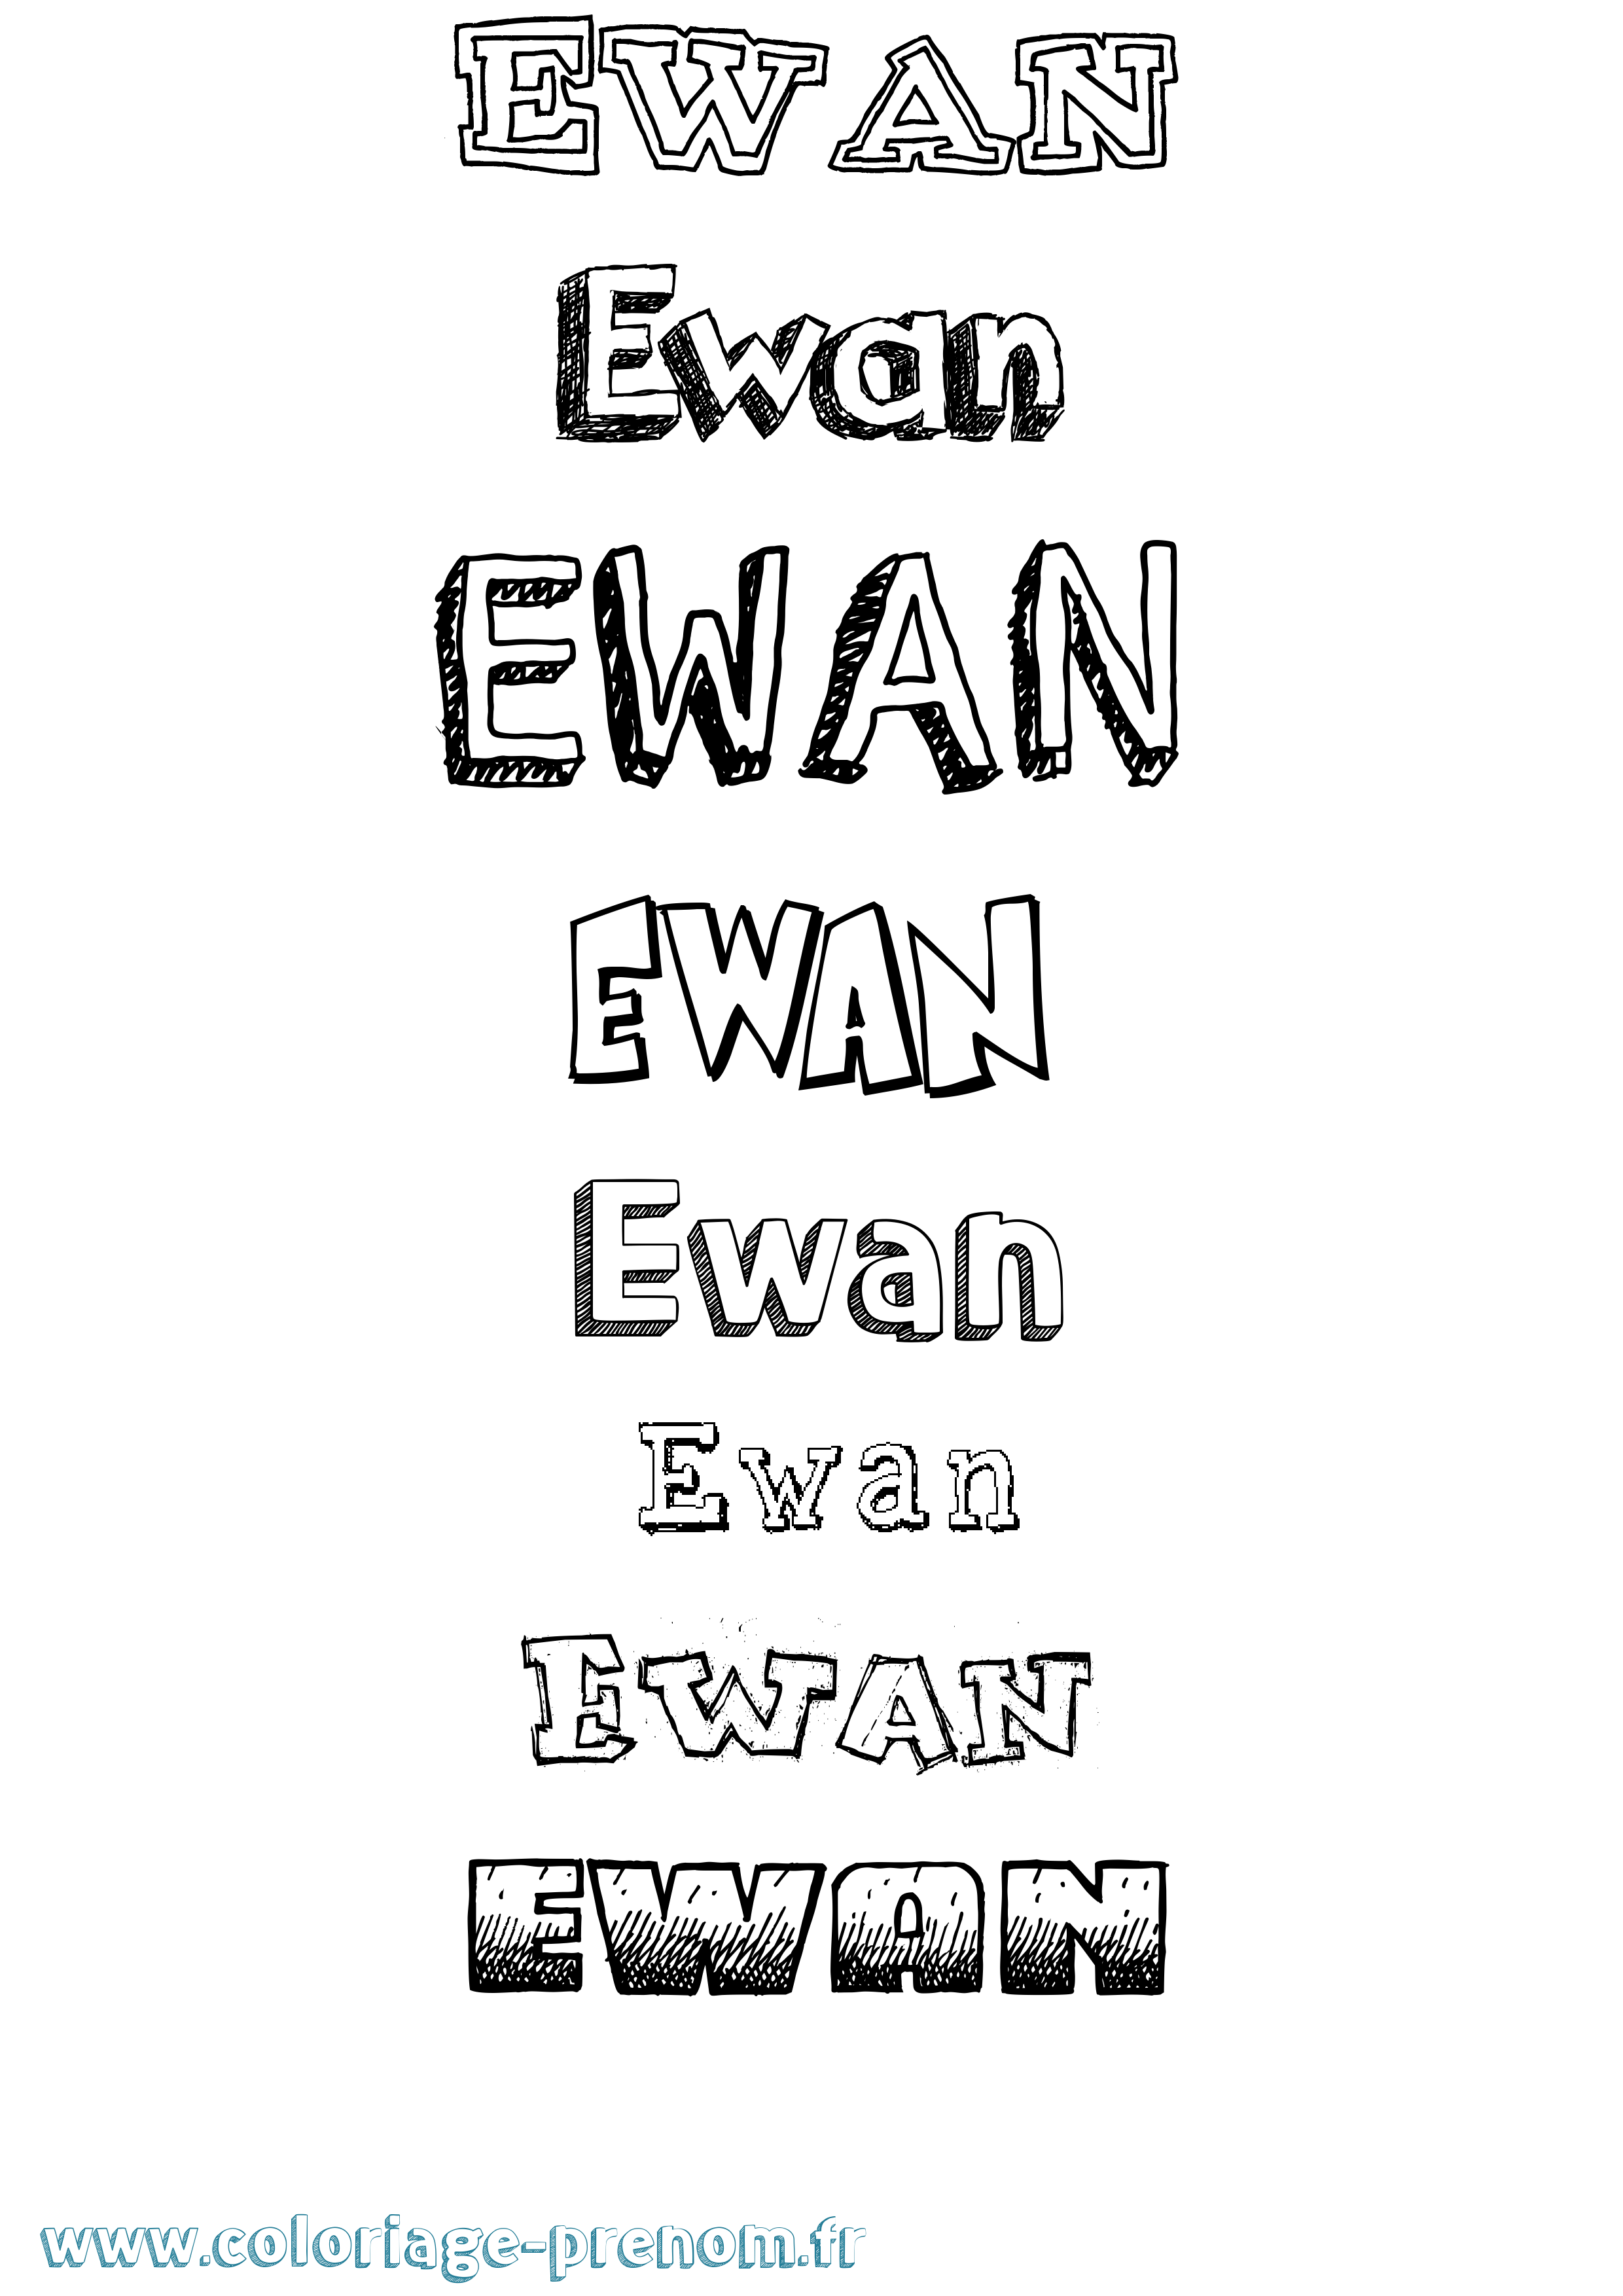 Coloriage prénom Ewan